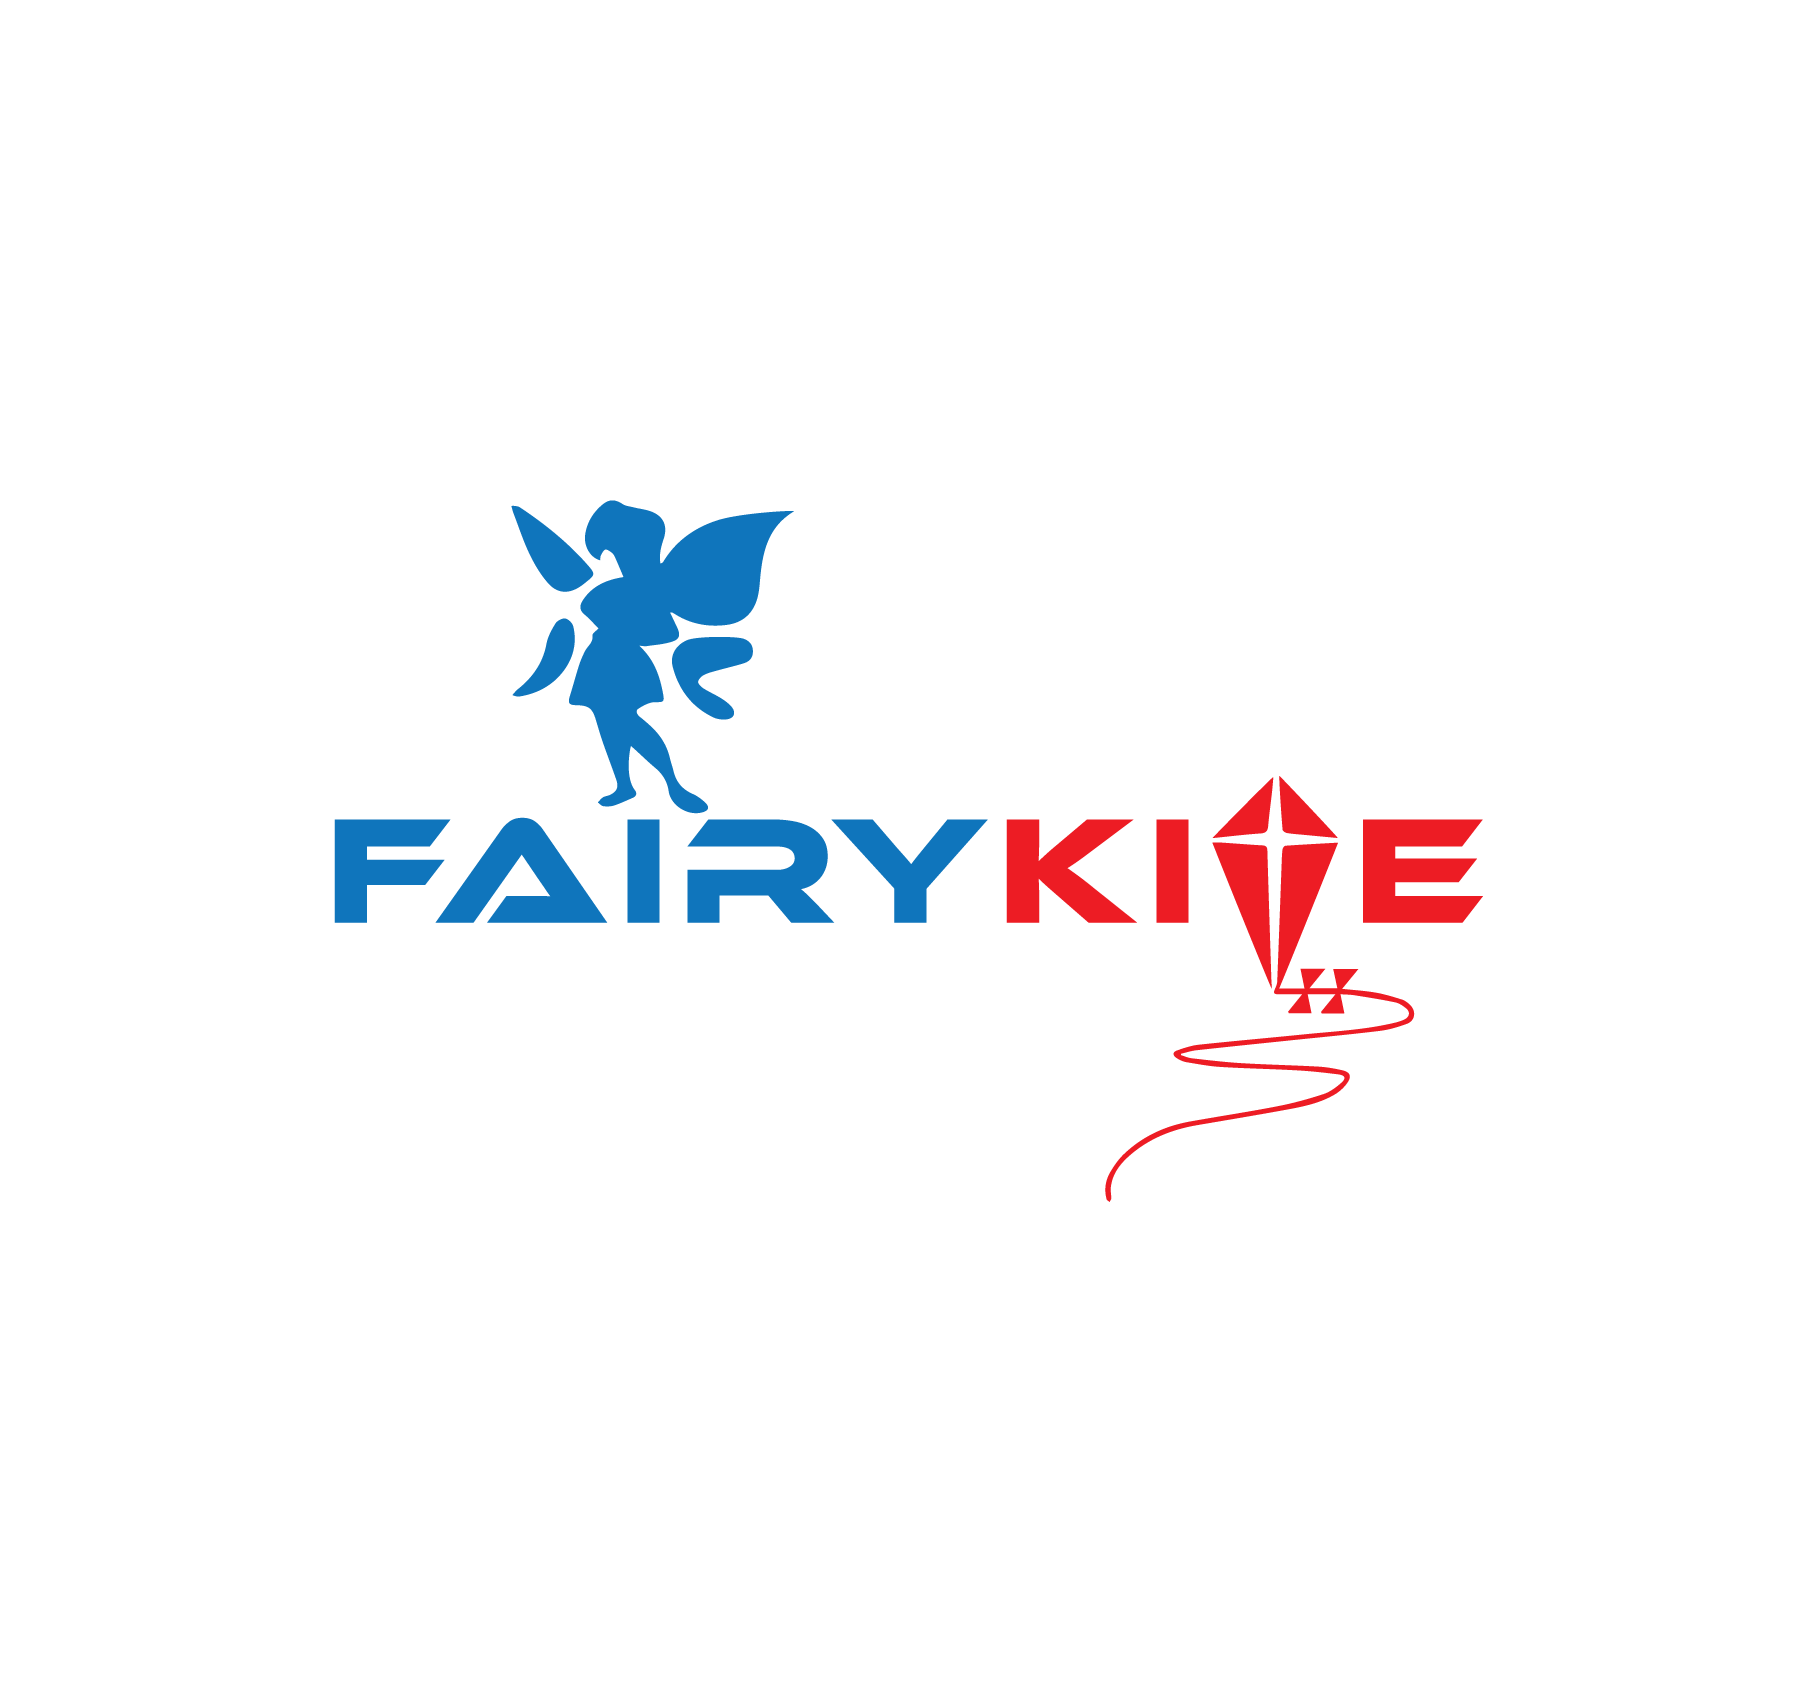 FairyKite